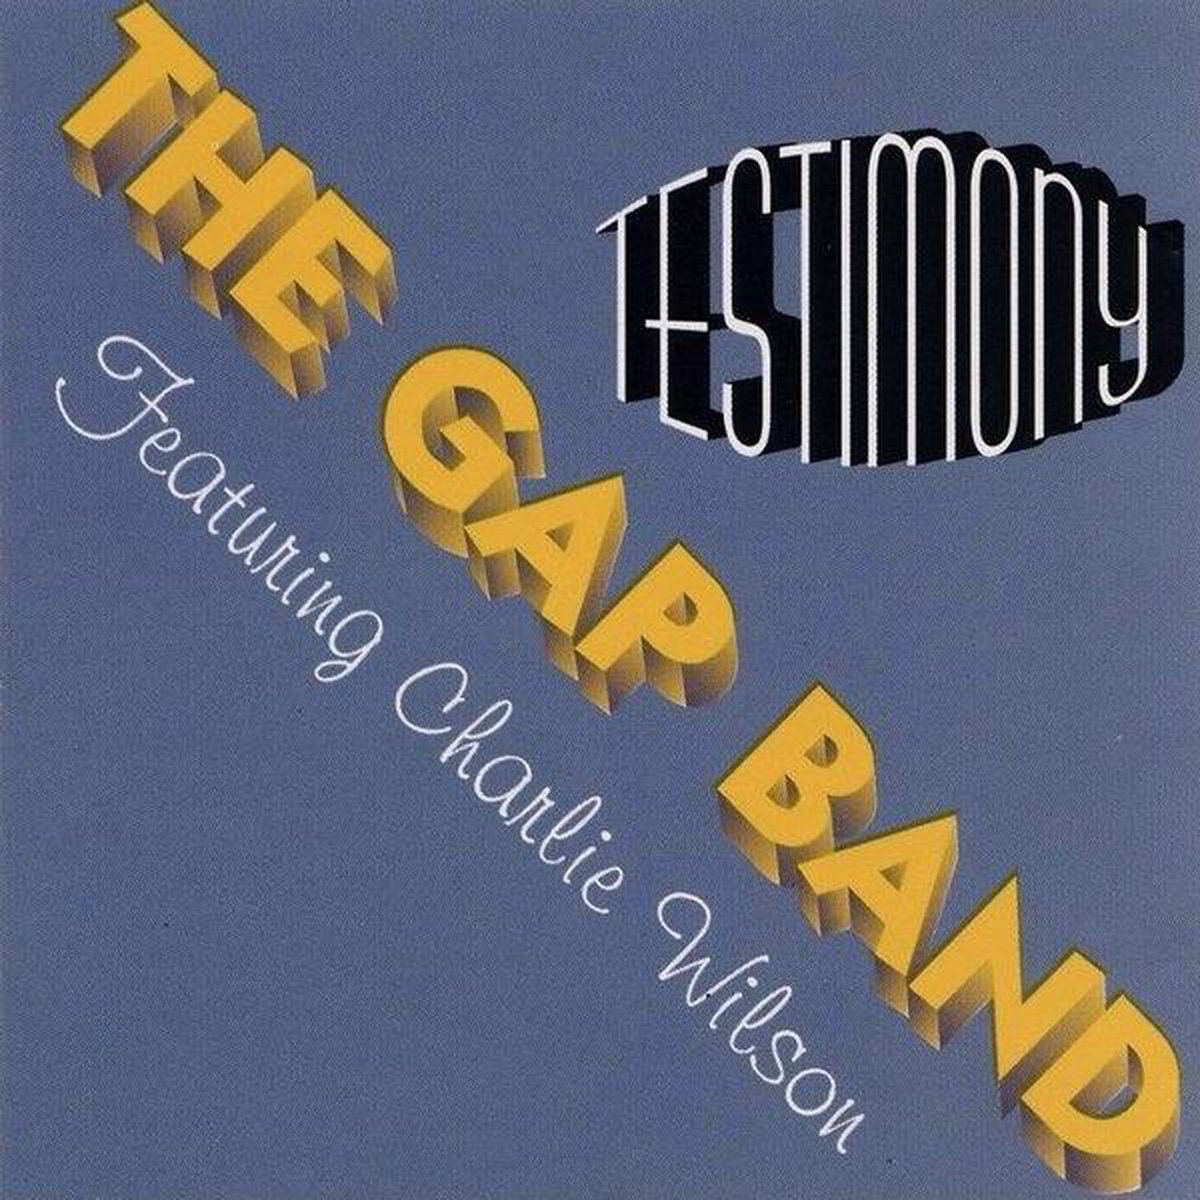 Testimony - The Gap Band